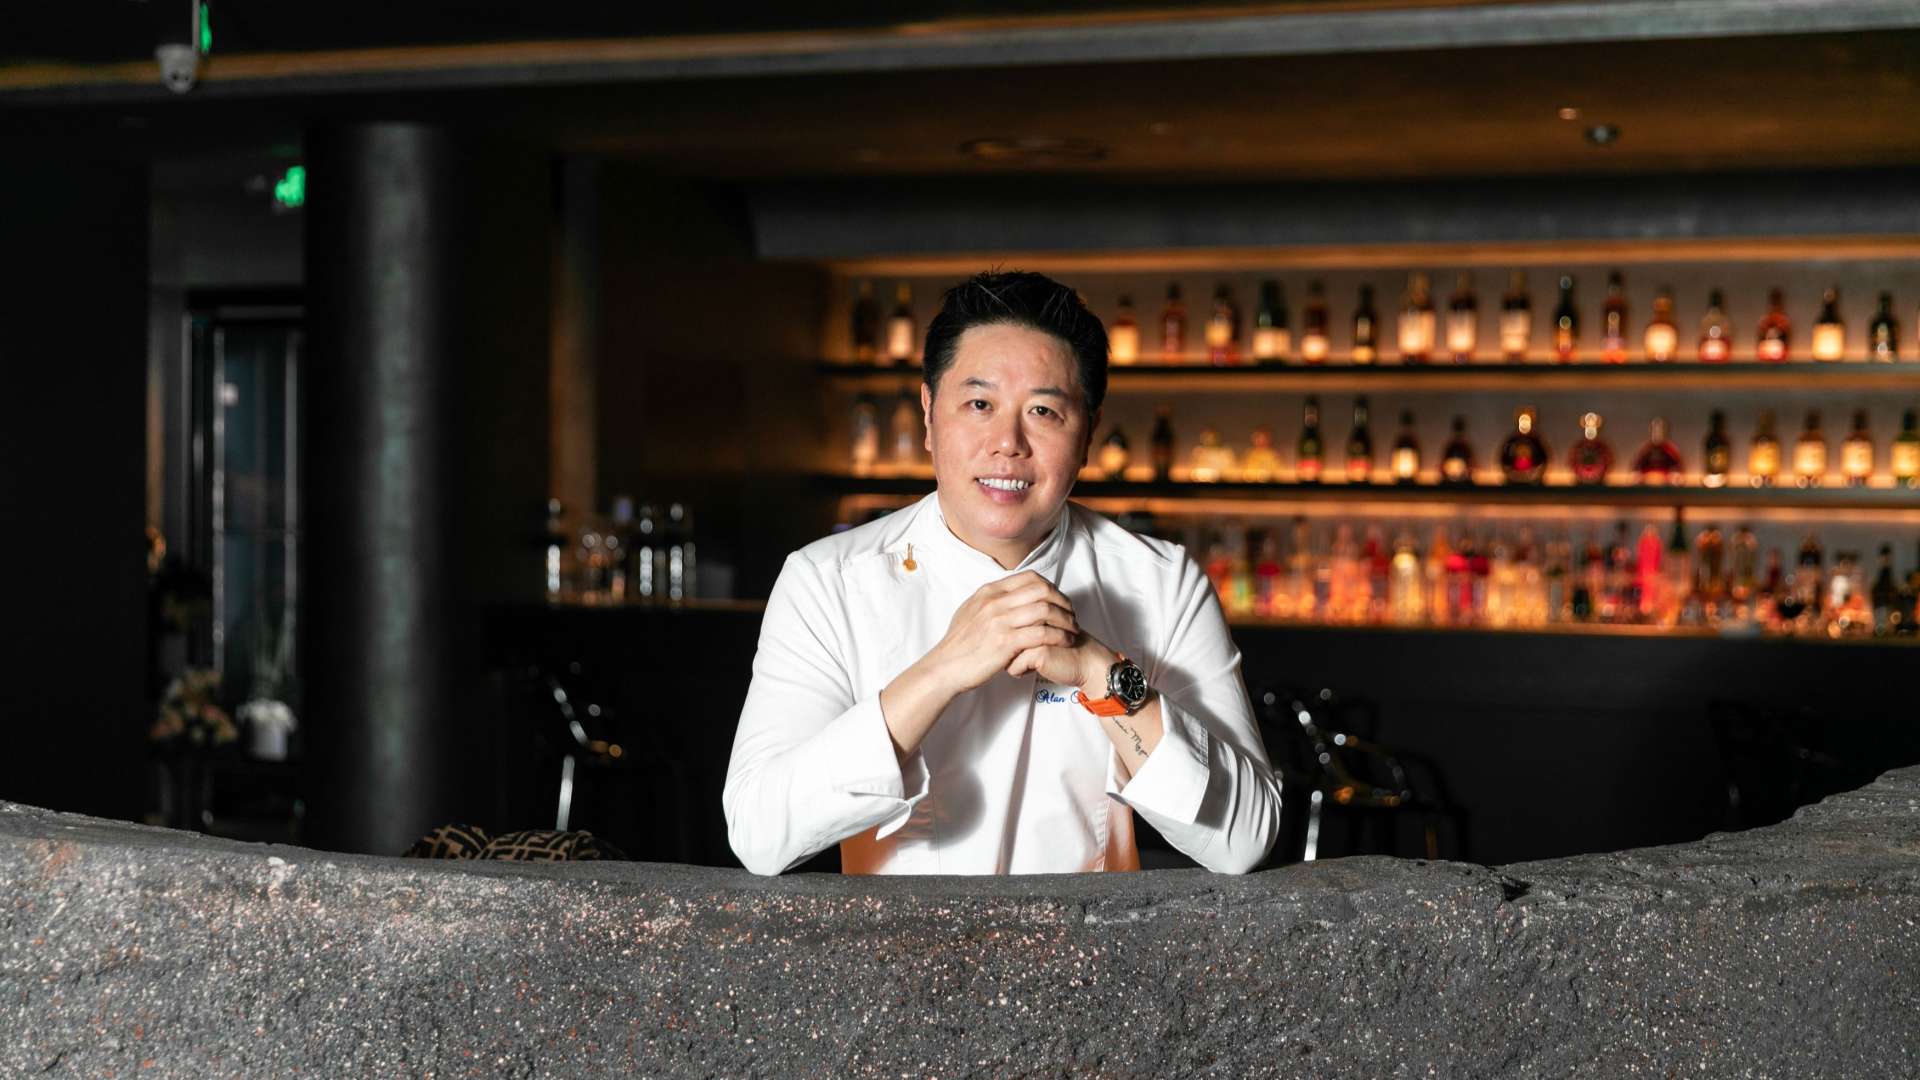 美食纪录片 - 杭州唯一米其林法餐厅 主厨曾是五角大楼工作的高材生